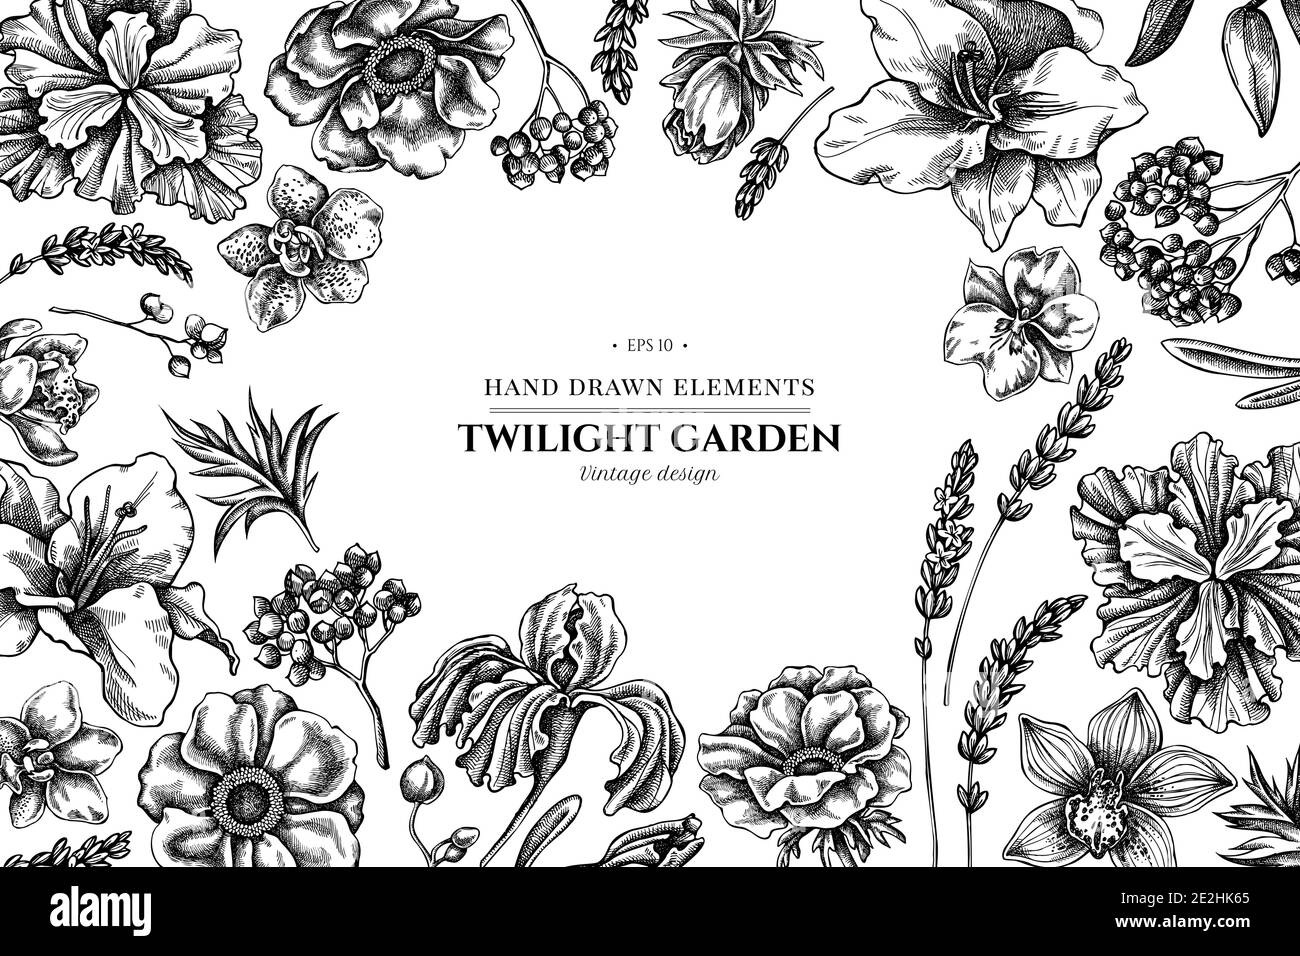 Florales Design mit schwarzer und weißer Anemone, Lavendel, Rosmarin Everlasting, Phalaenopsis, Lilie, Iris Stock Vektor